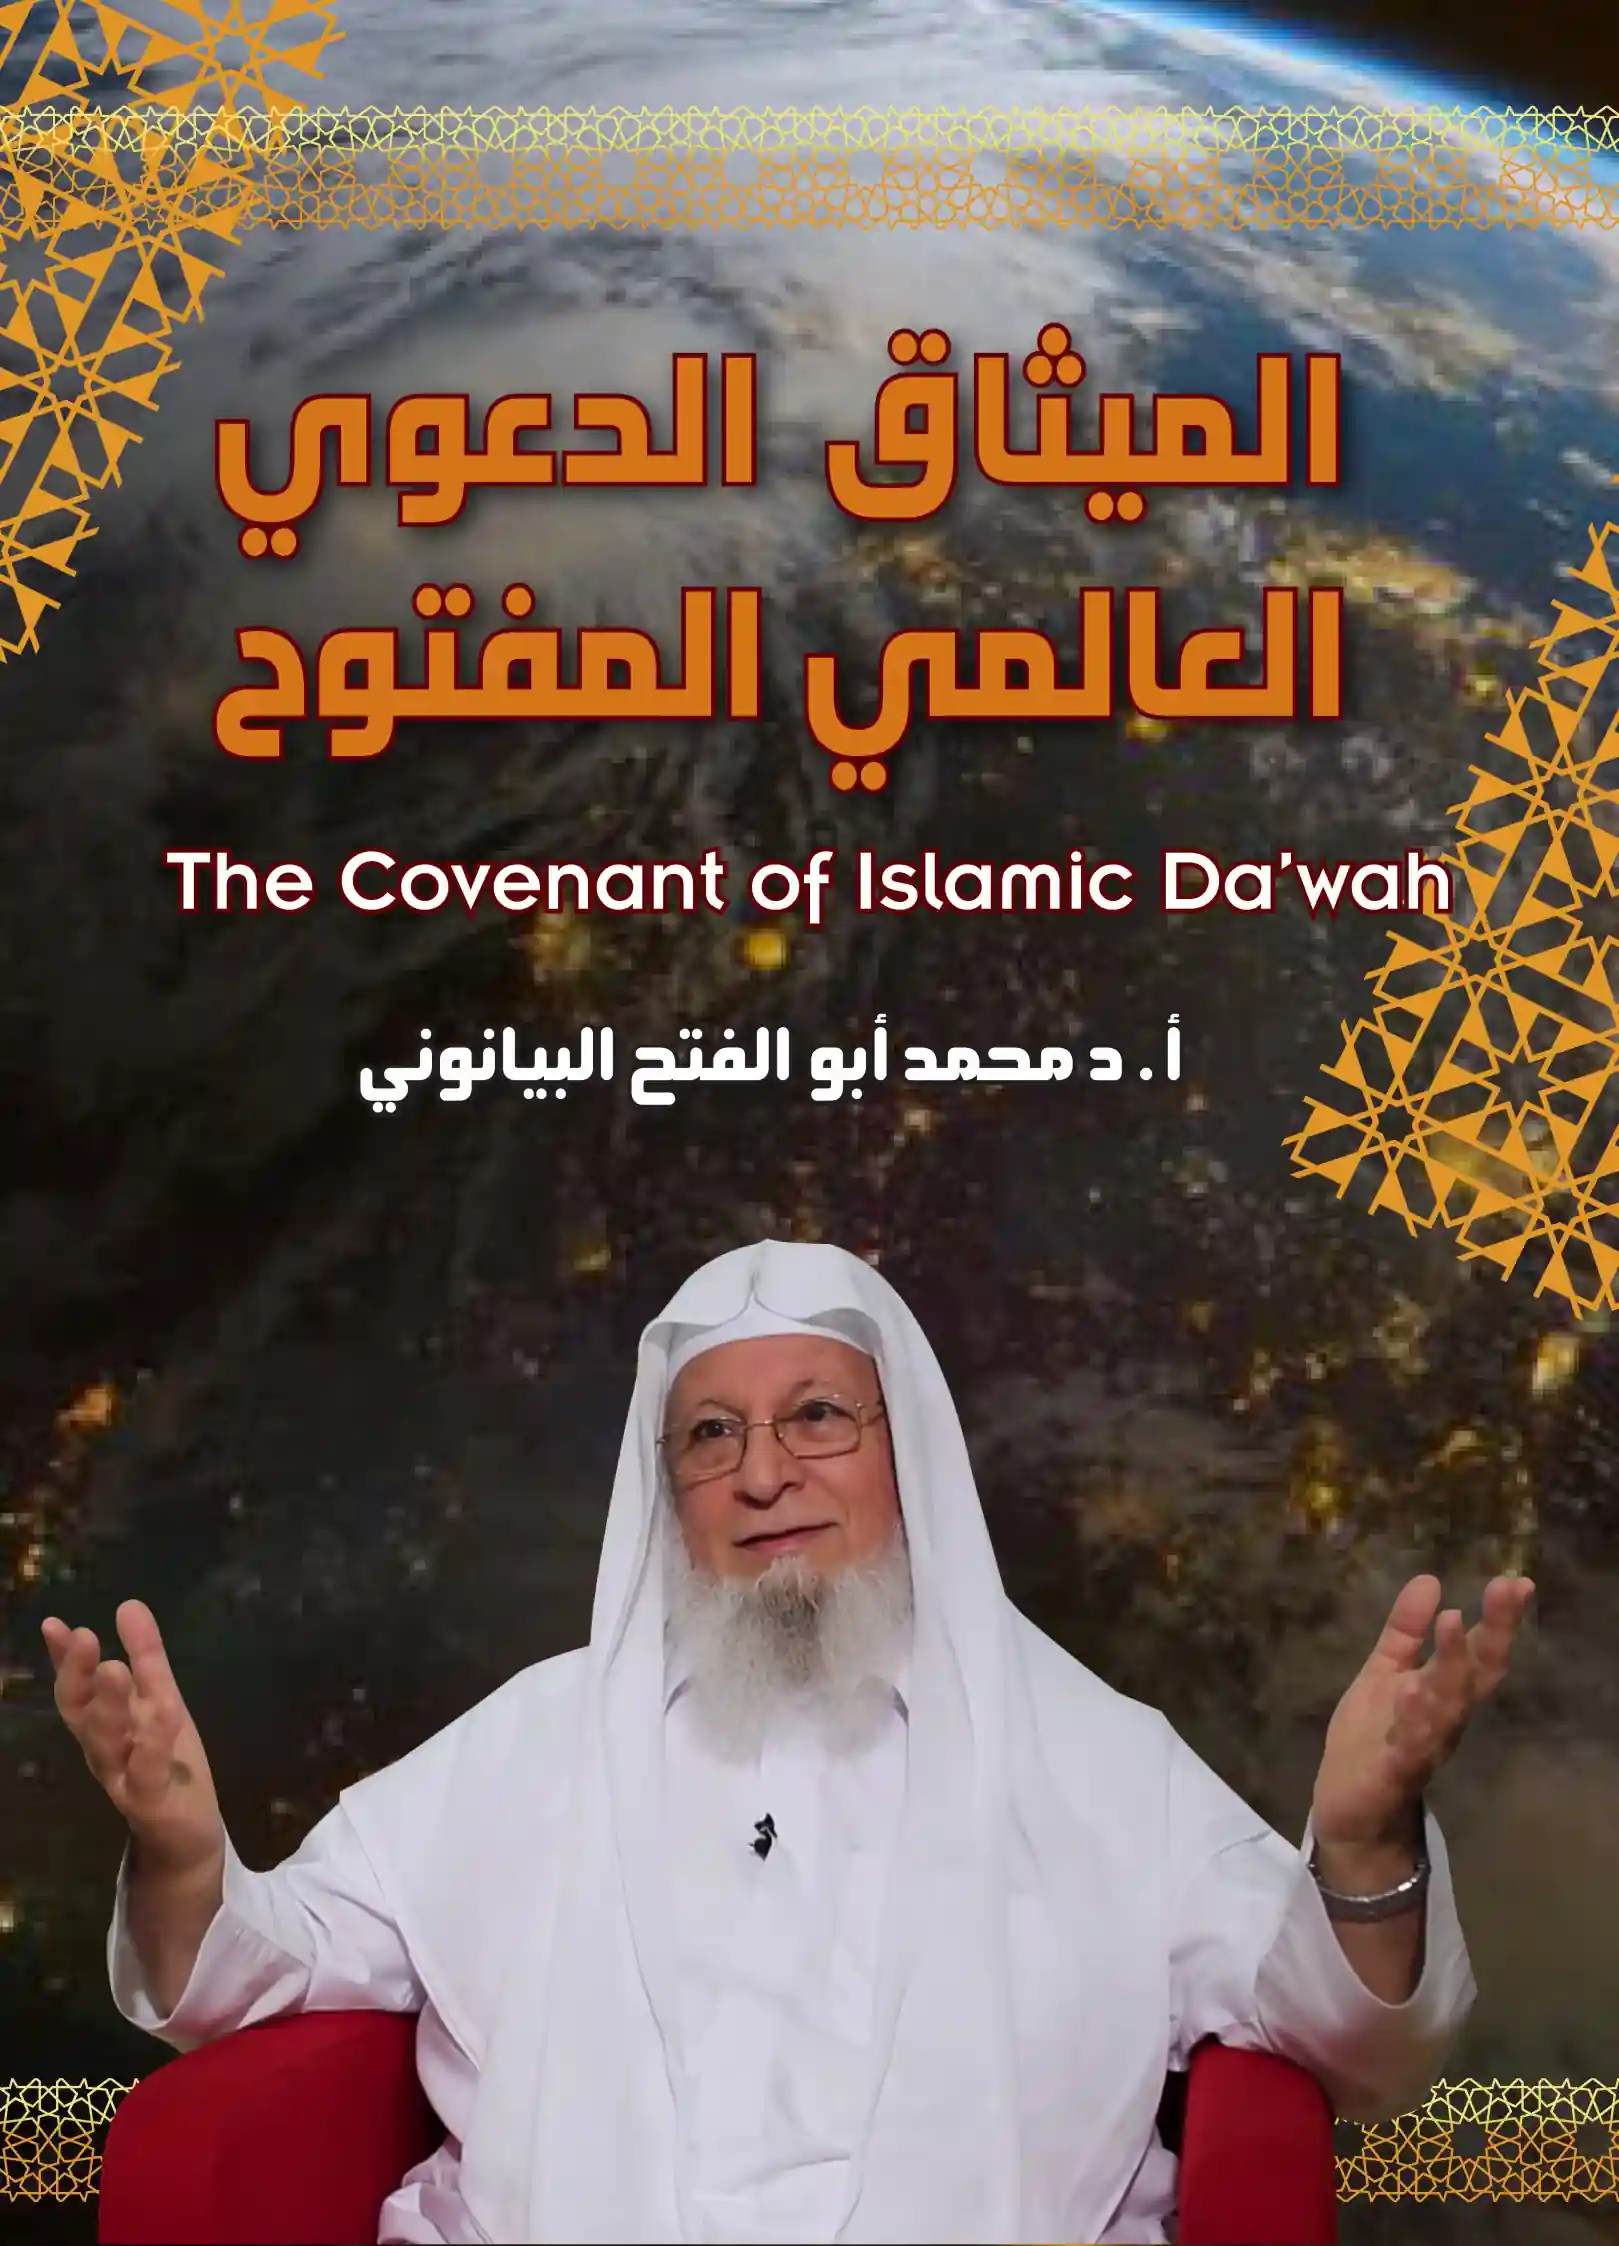 الميثاق الدعوي العالمي المفتوح - The Covenant of Islamic Da'wah